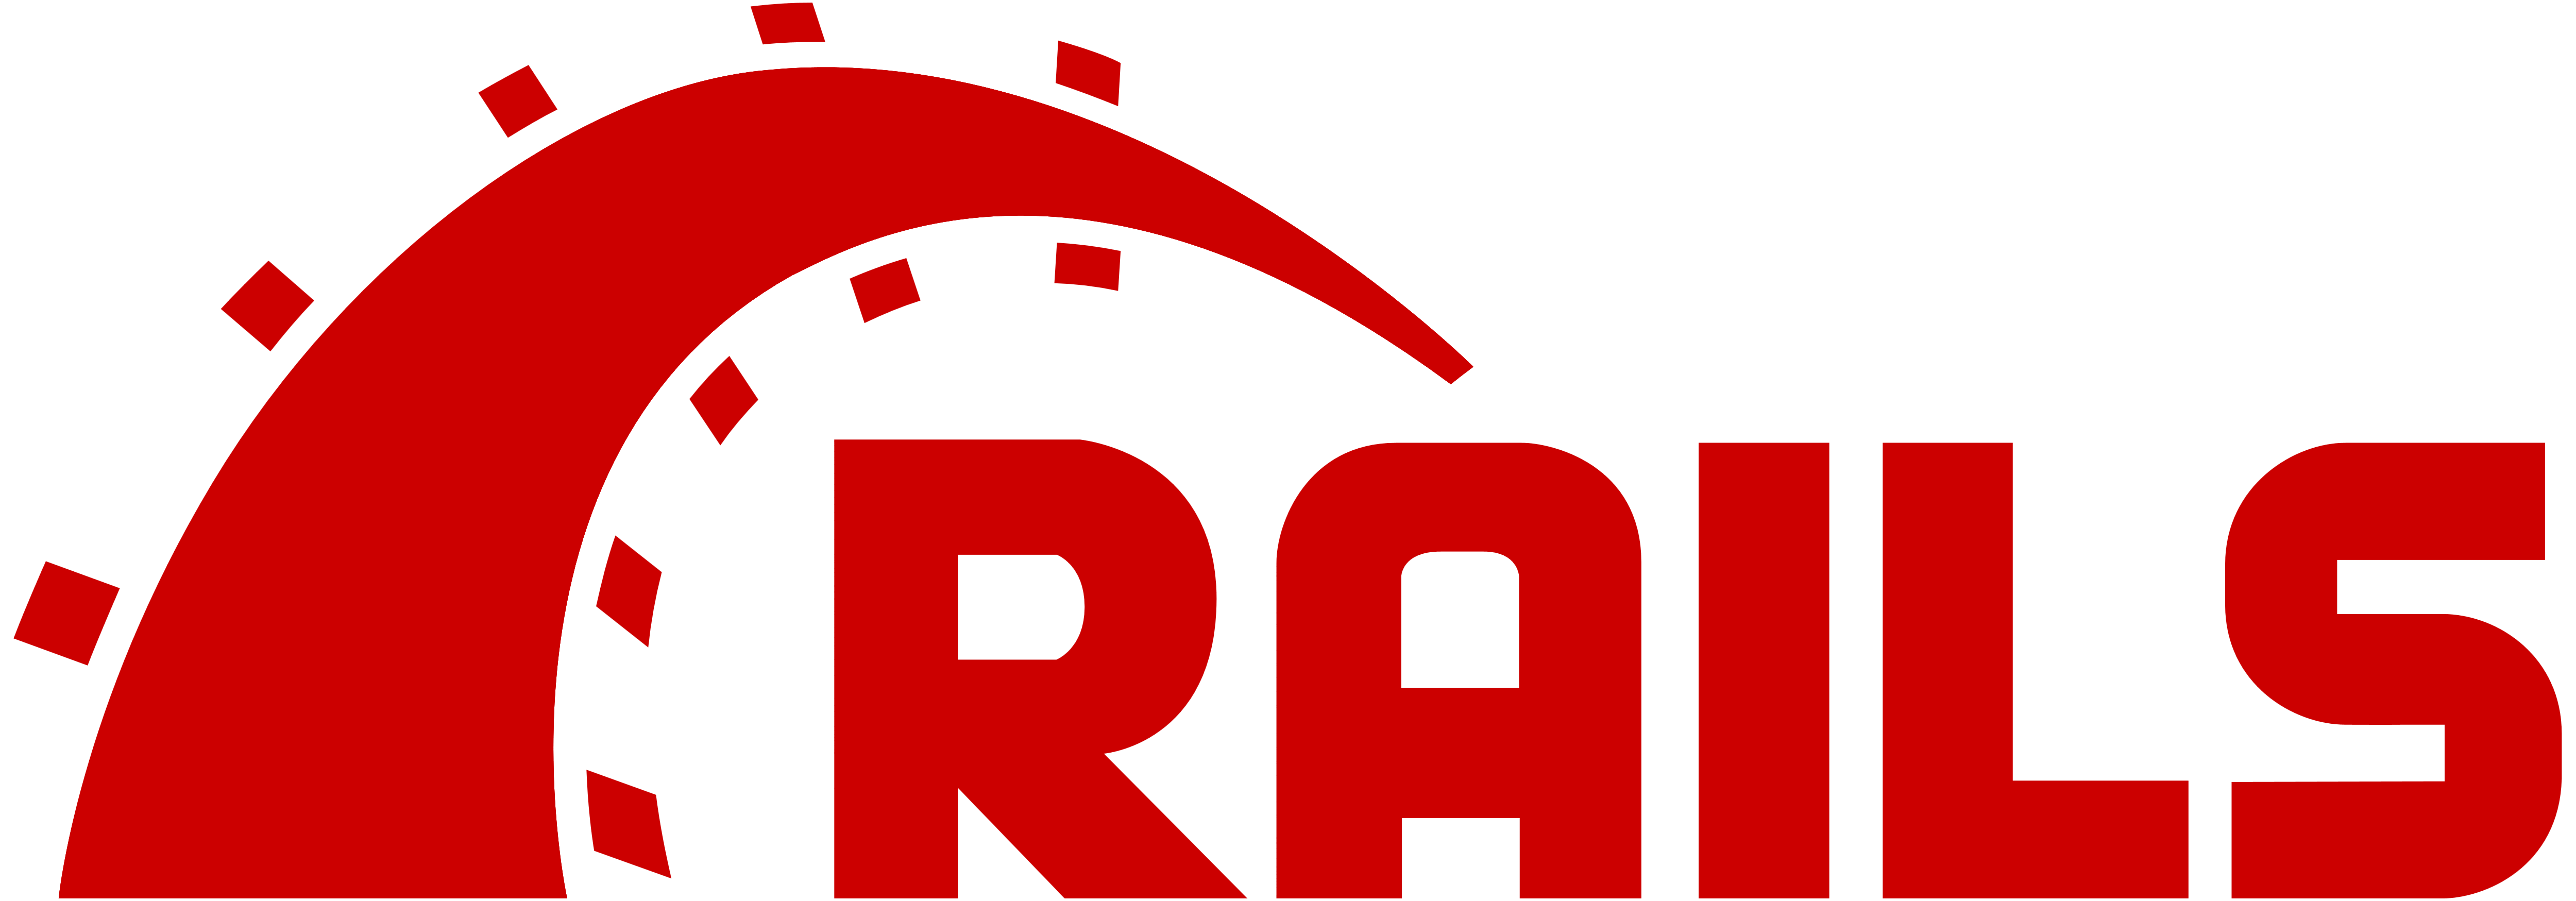 Lei Ruby on Rails-utvikler